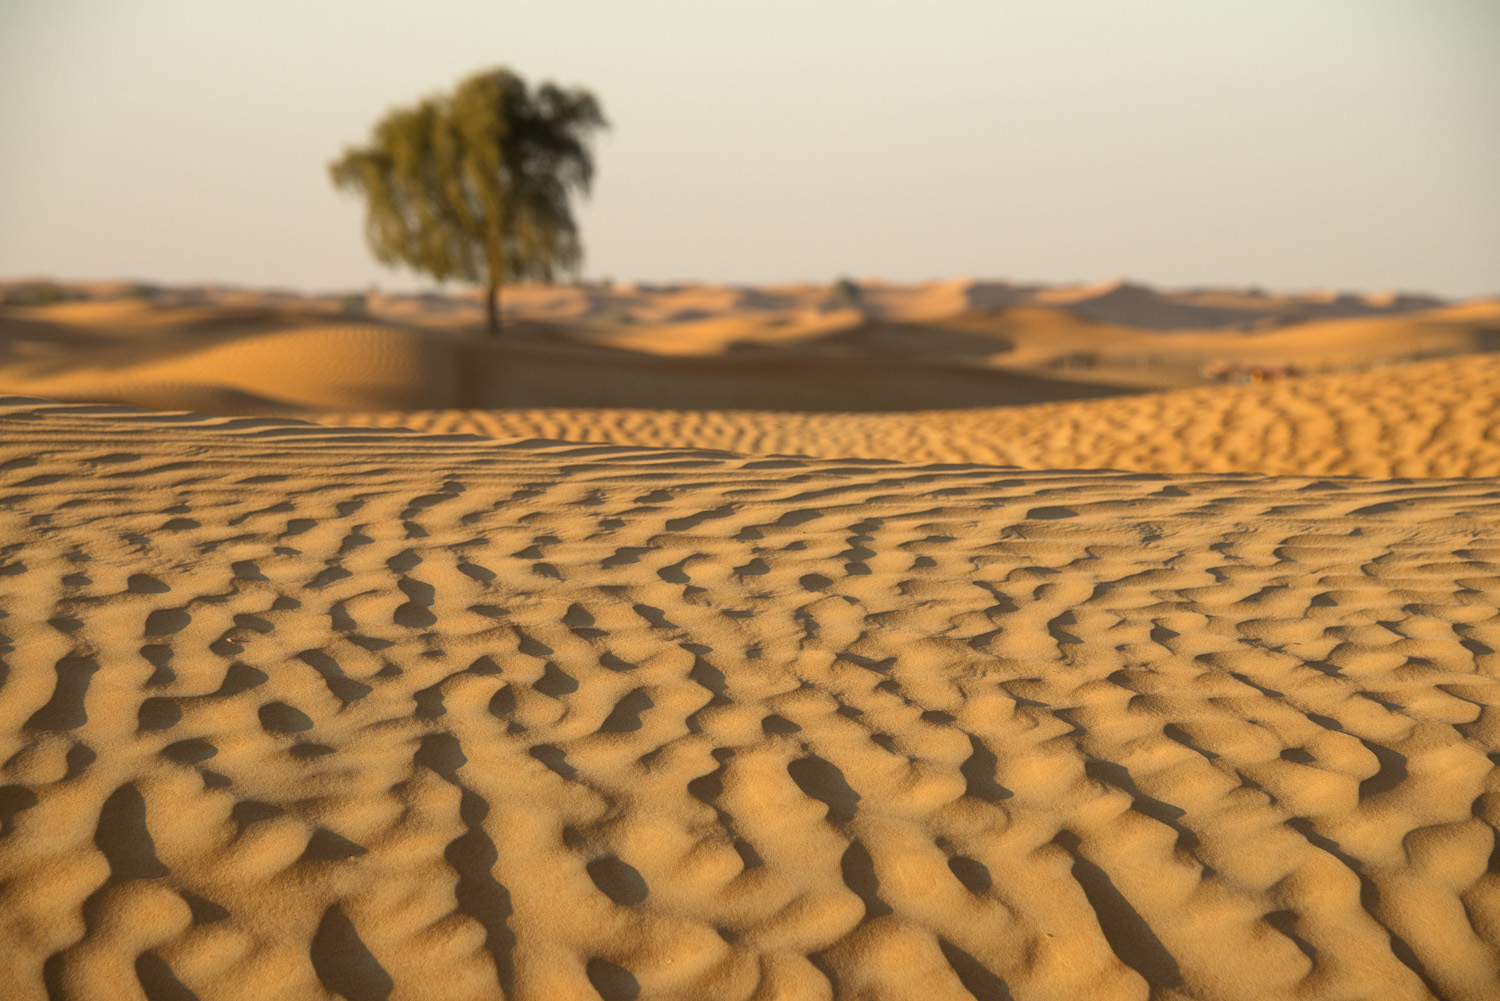 jo-kearney-video-photos-photography-travel-portraits-prints-for-sale-dubai-landscape-sand-dunes-landscape-photography-dubai-UAE-desert.jpg